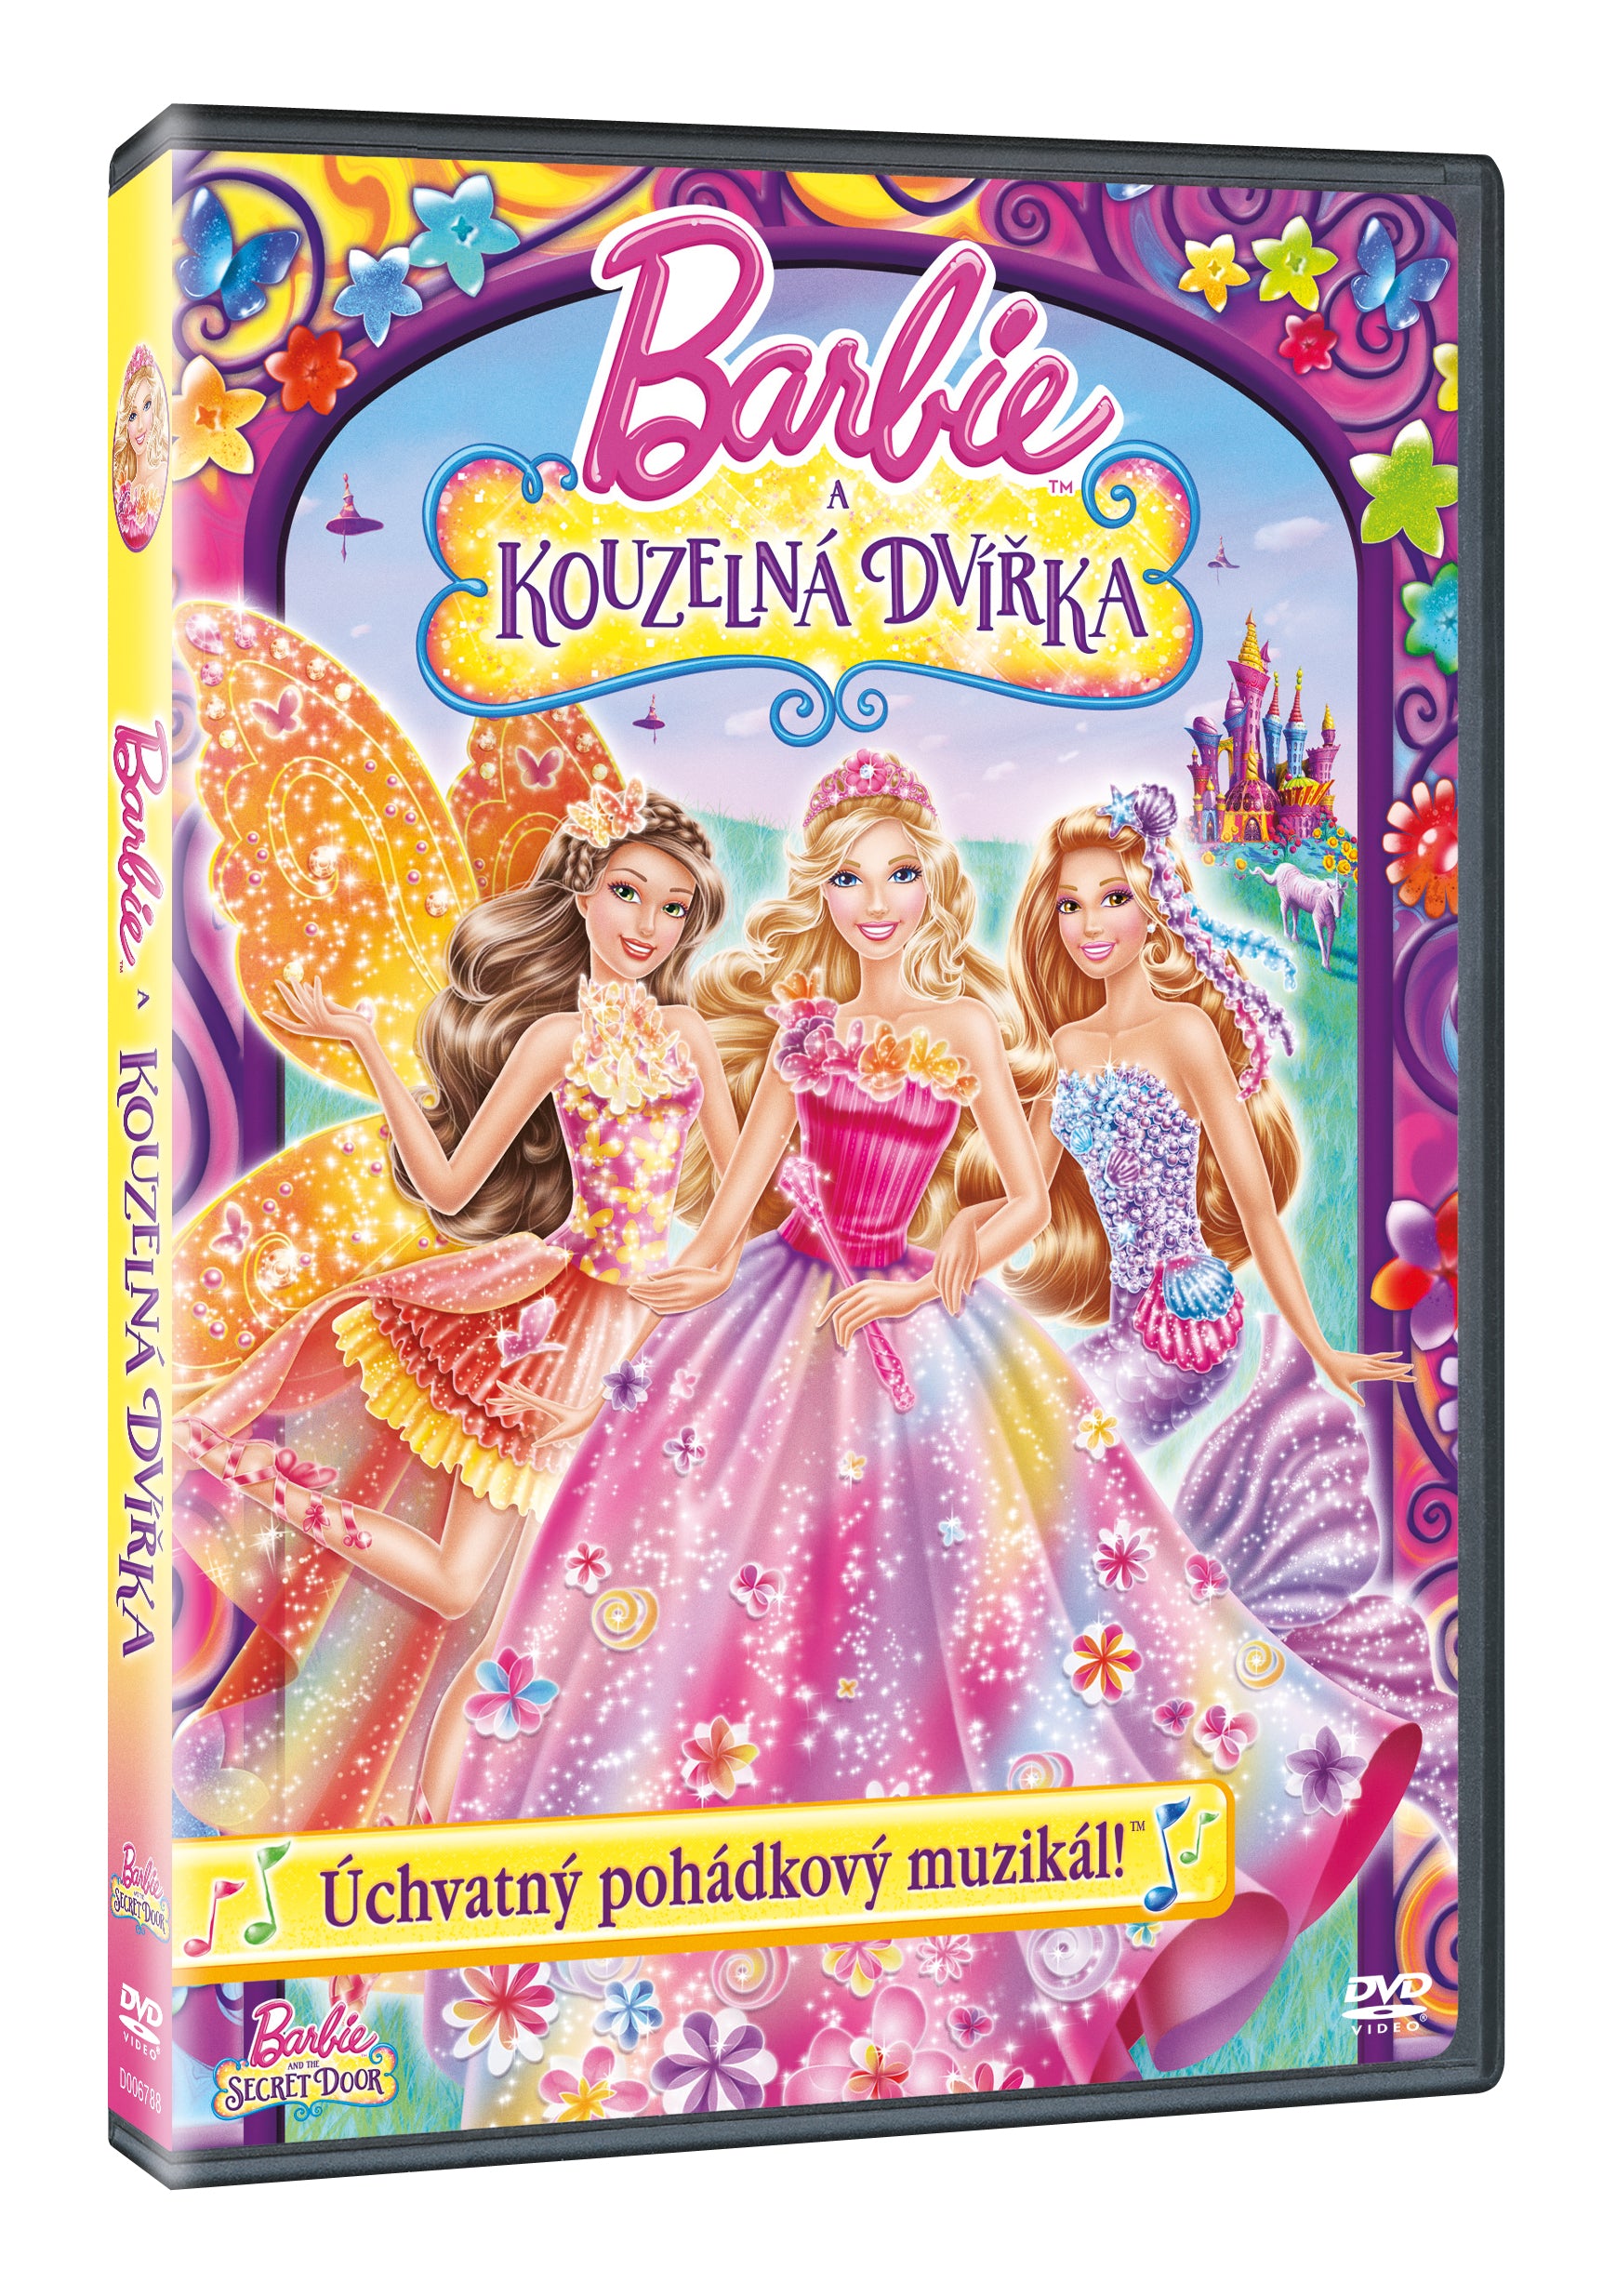 Barbie a Kouzelna dvirka DVD / Barbie und die Geheimtür